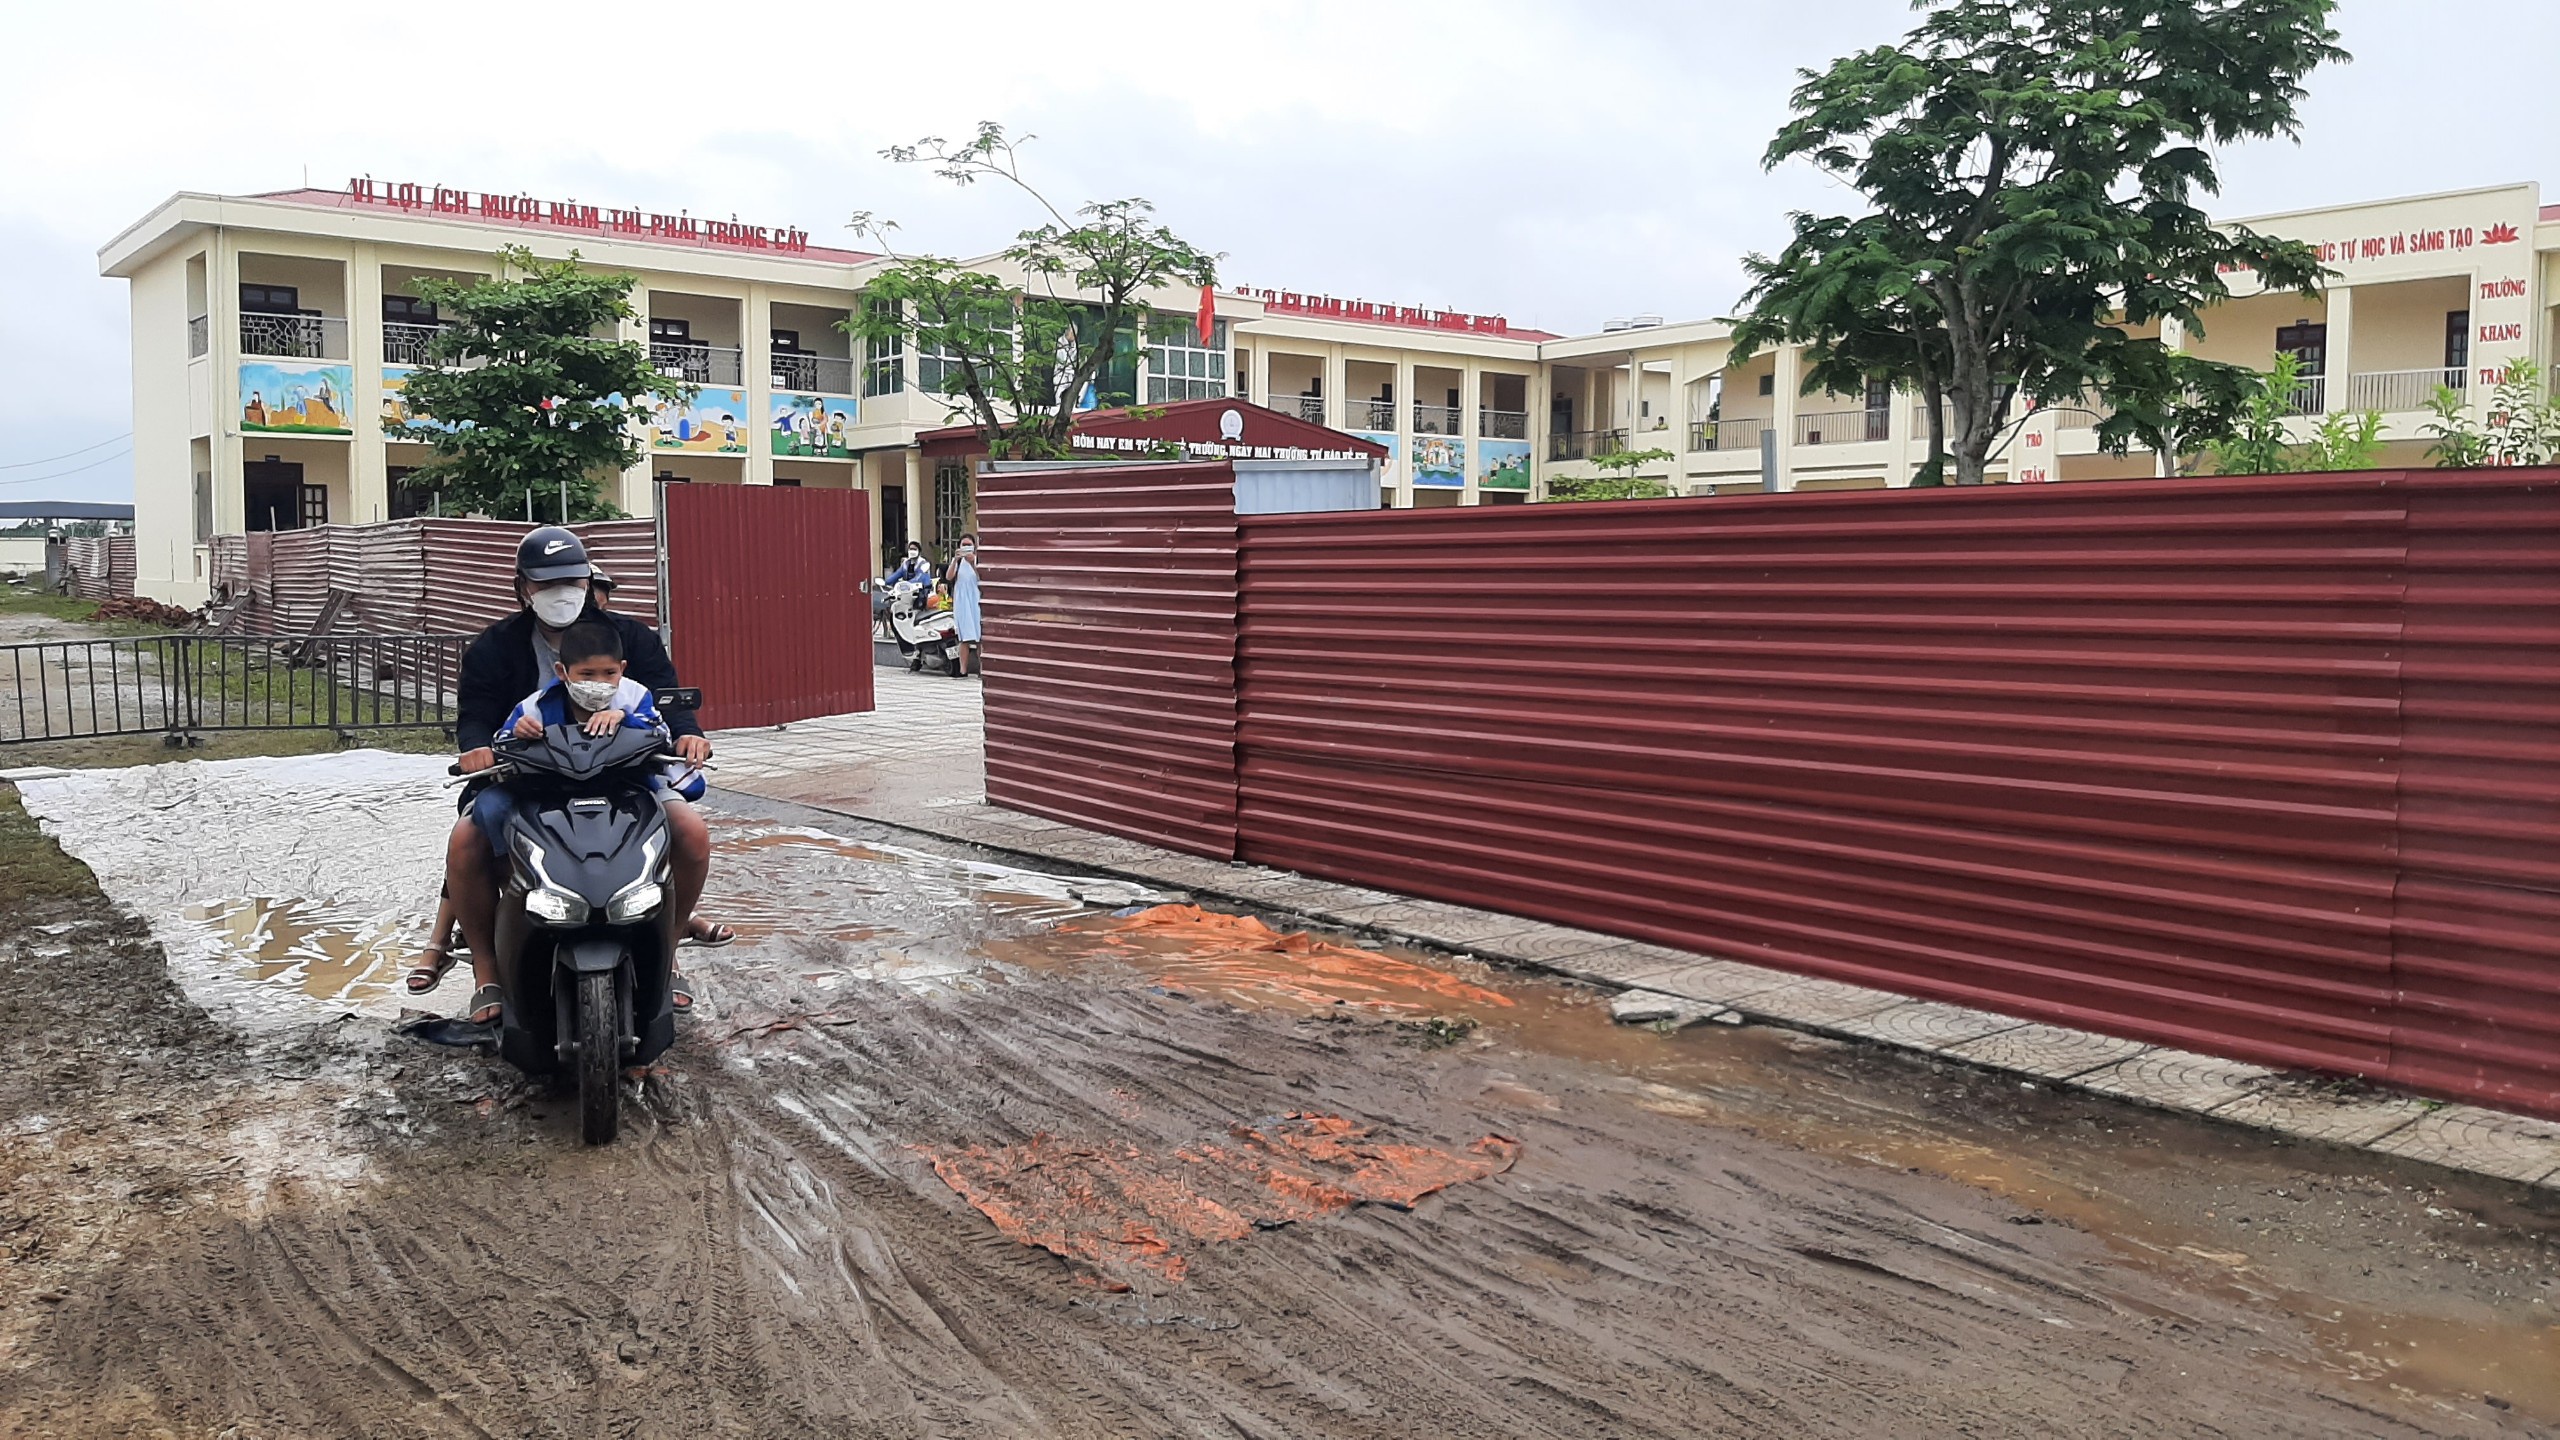 Nhà trường phải mở lối đi phụ khác trong thời gian cổng chính sửa chữa. Ảnh: Nguyễn Dương.